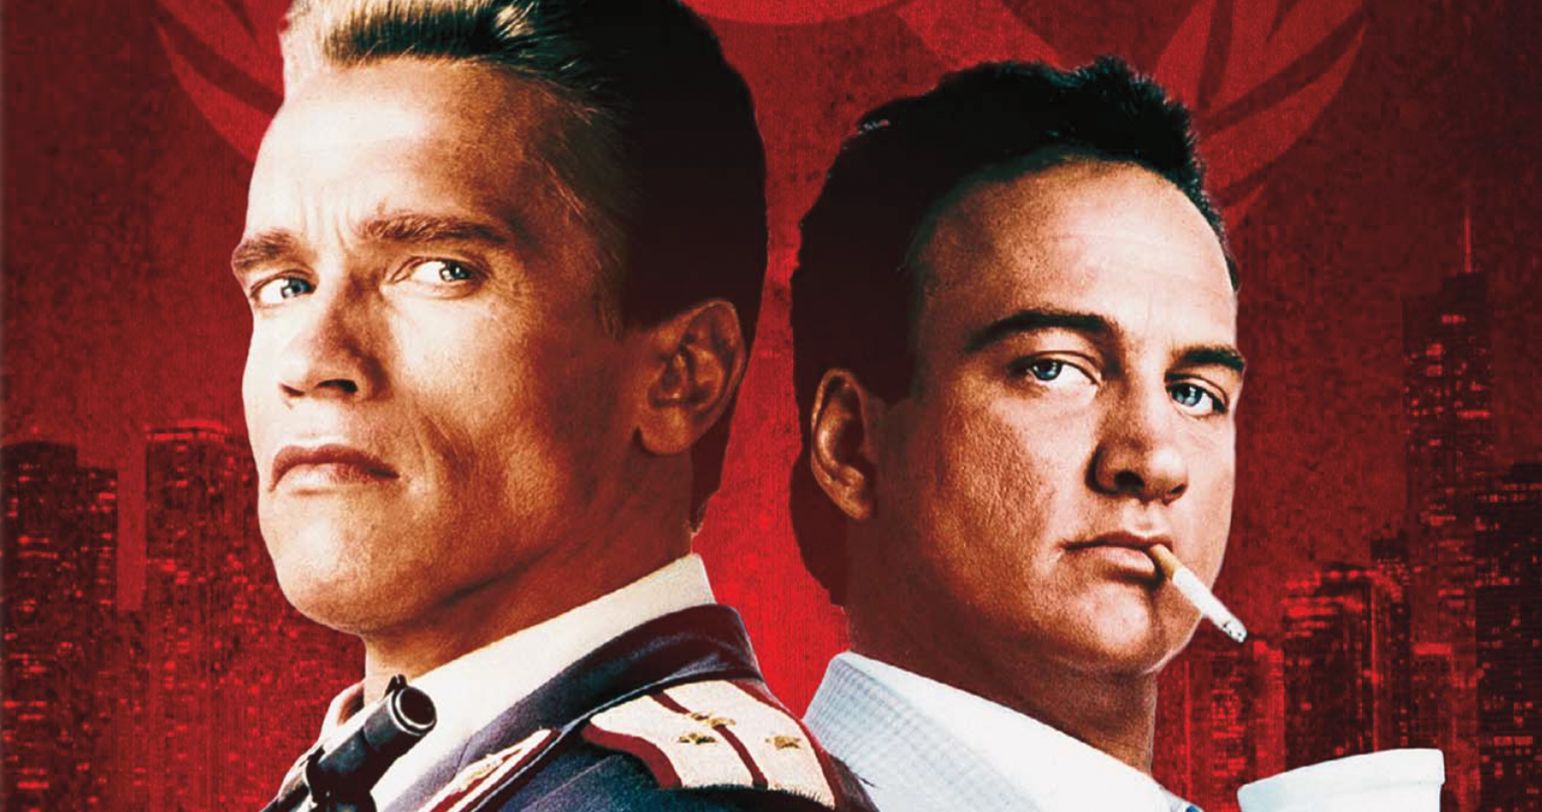 Schwarzenegger &amp; Belushi's Red Heat Gets Tough in New Fully Loaded 4K Ultra HD Release